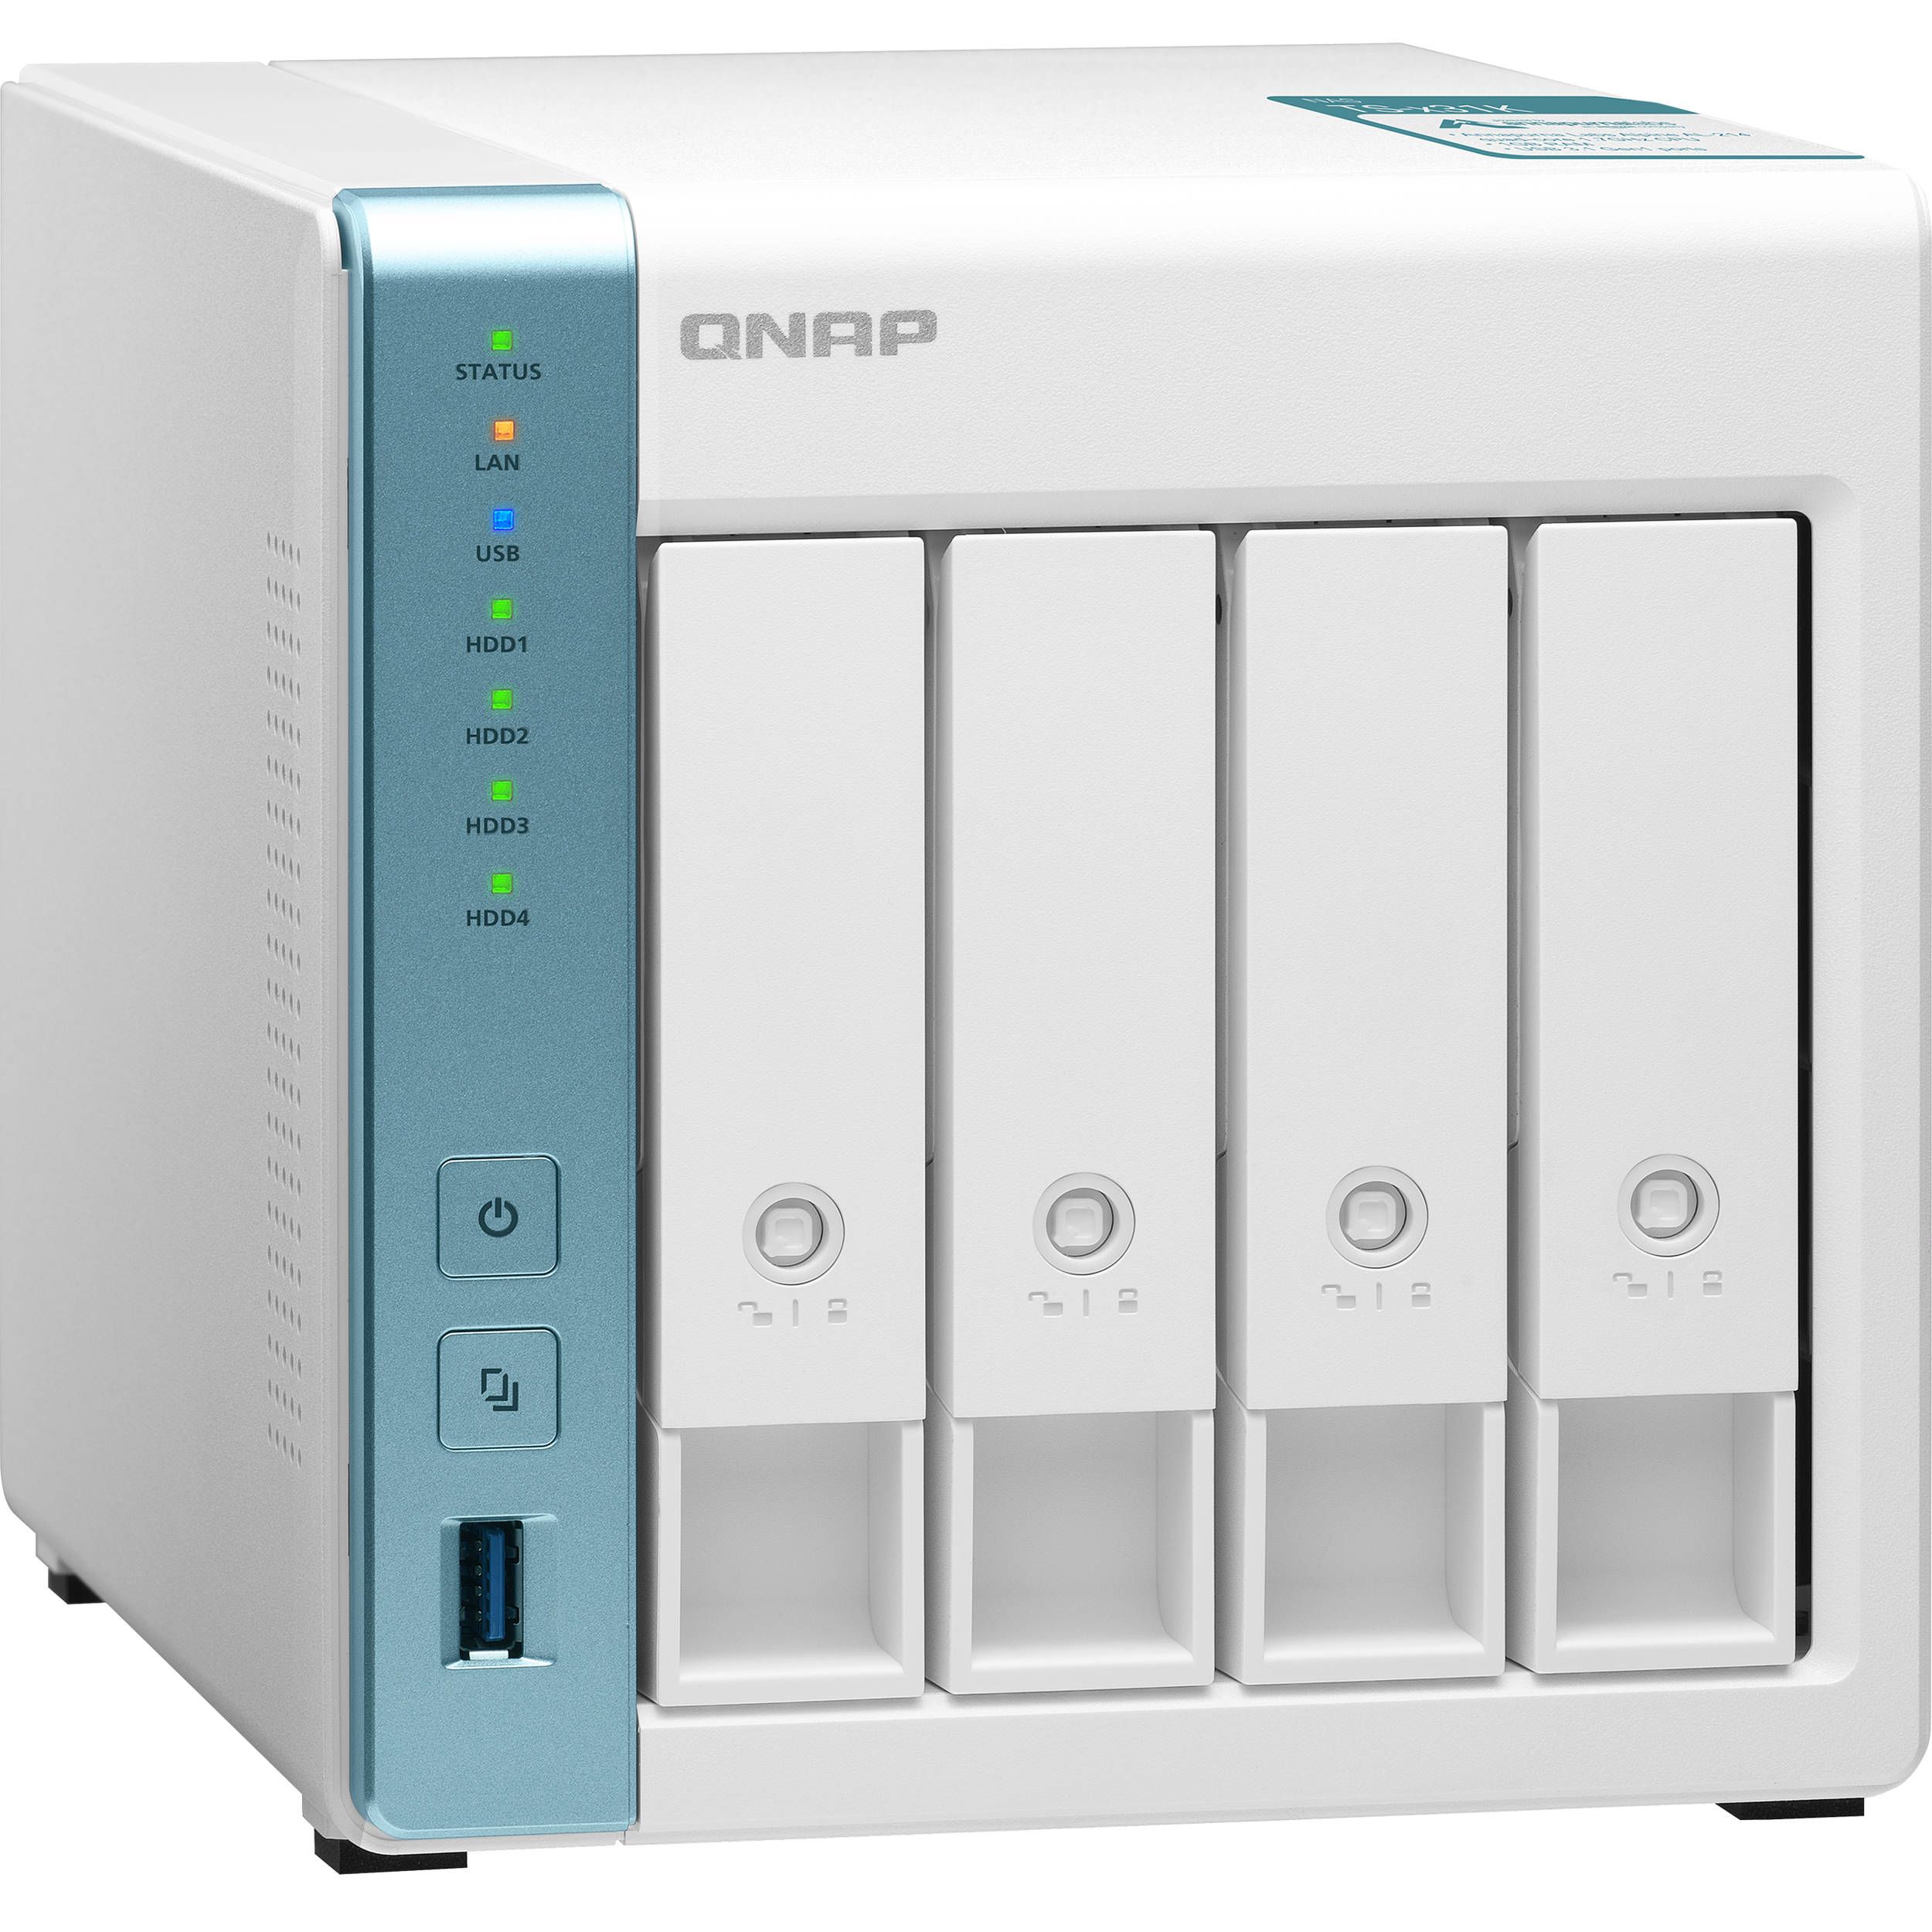 QNAP TS-431K NAS/storage server Tower Ethernet LAN White Alpine AL-214_1